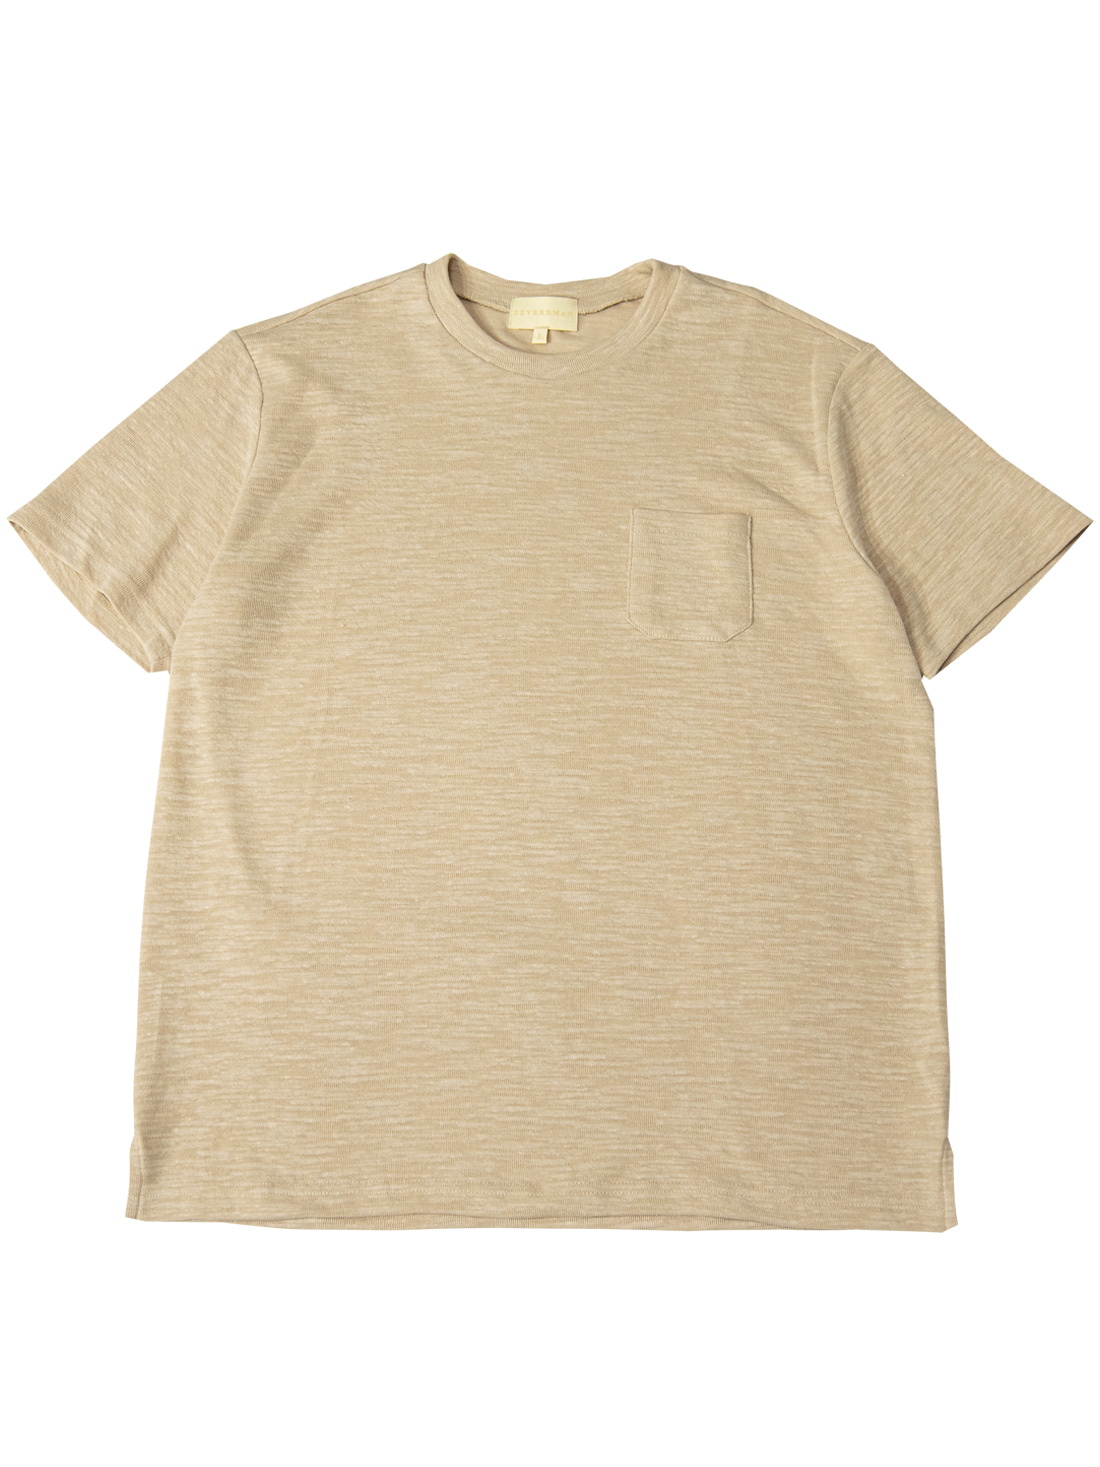 [드베르망] knit textured slub pocket T shirt (beige)